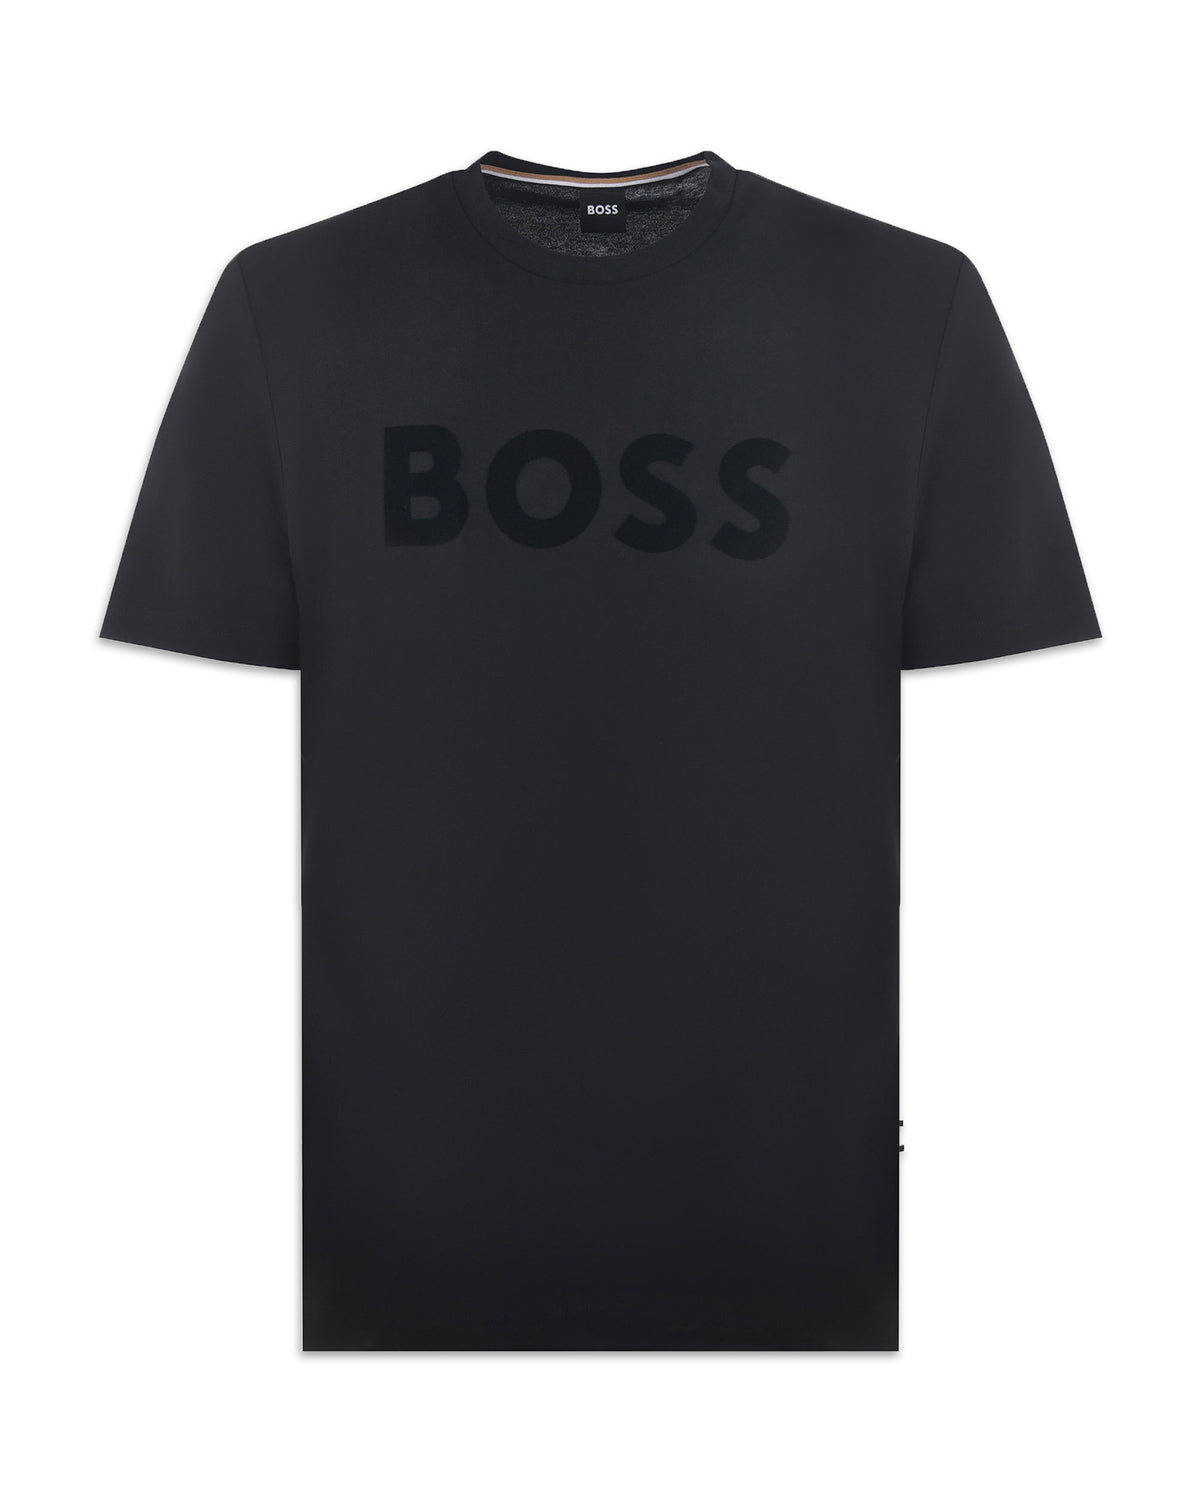 T-shirt Uomo Boss Tiburt 318 Nero